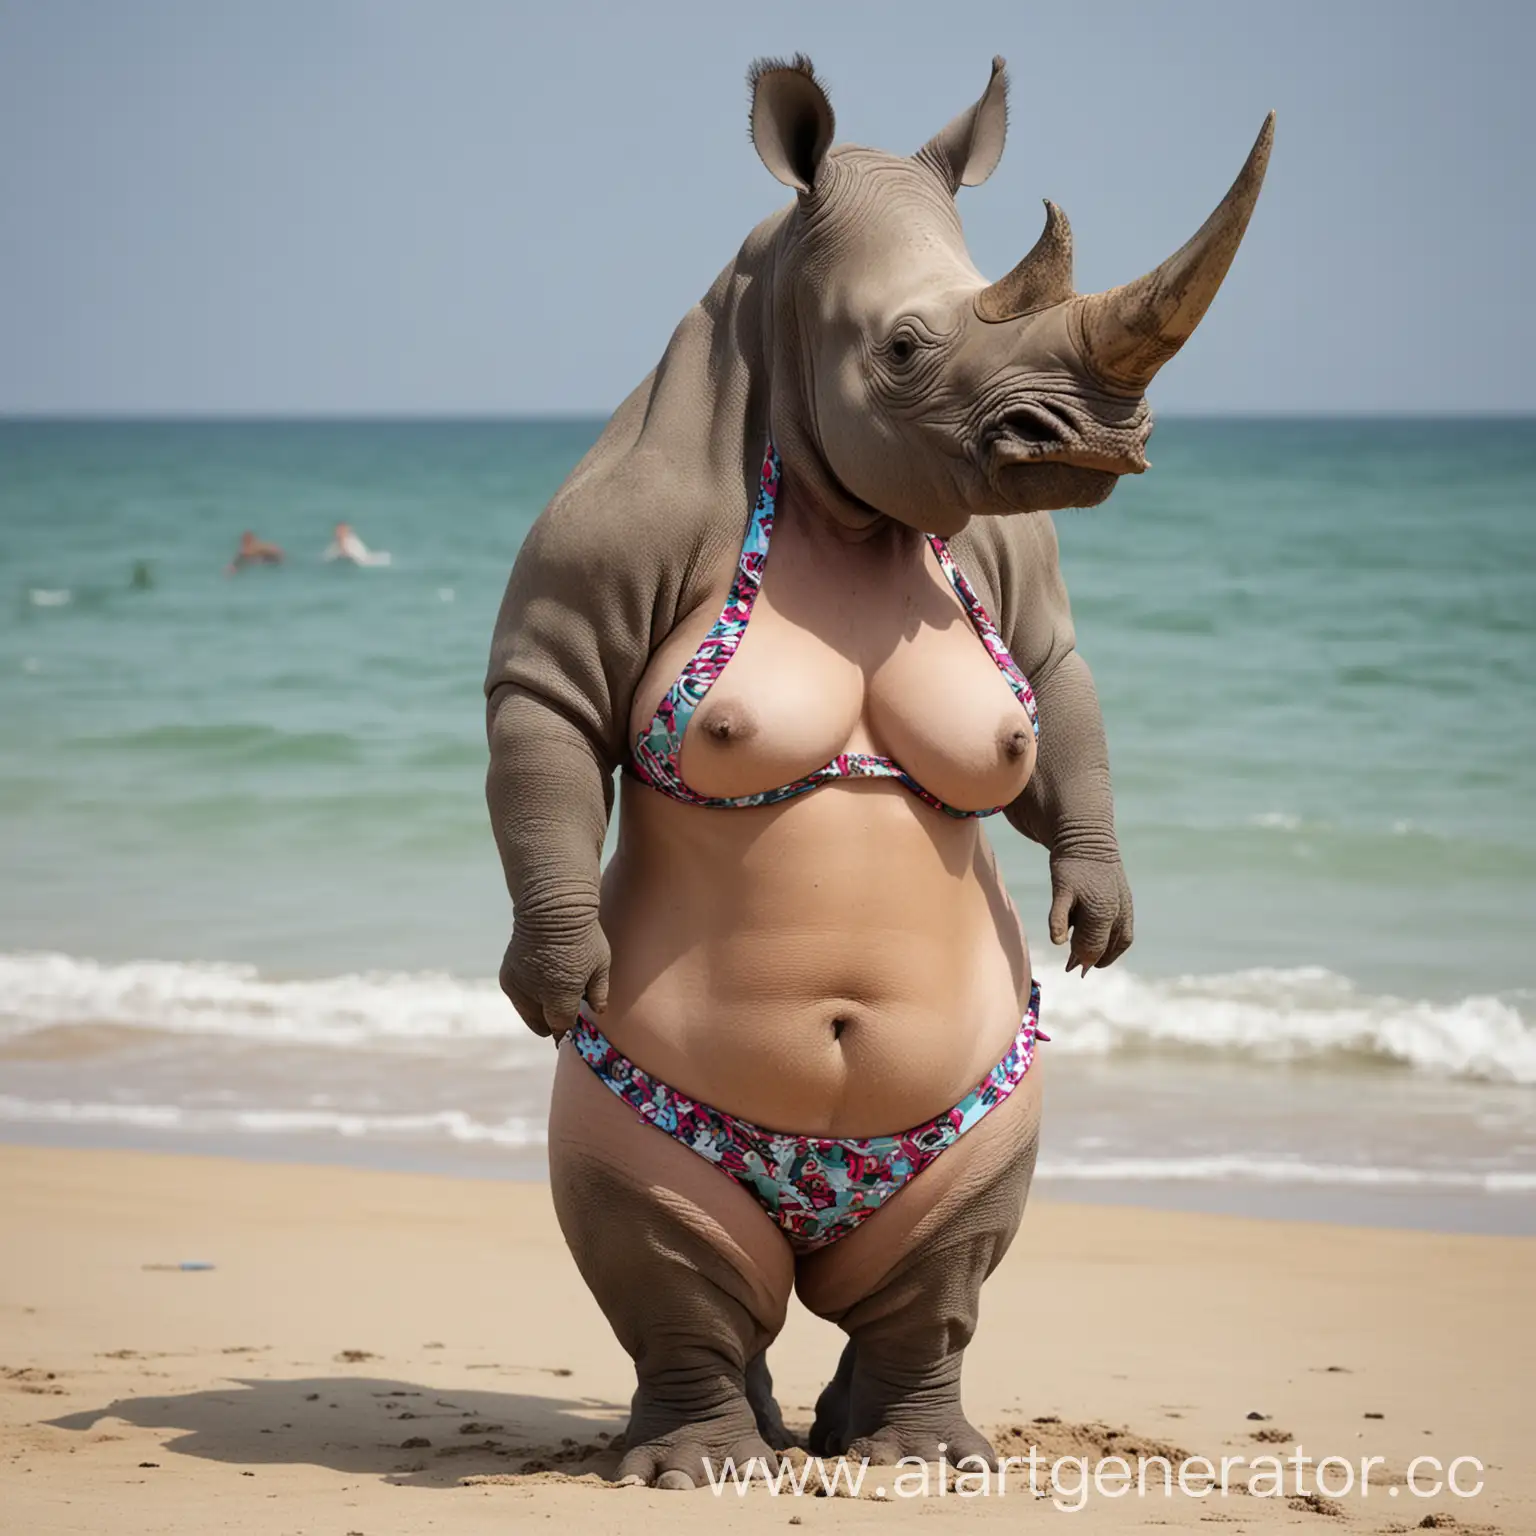 Playful-Rhinoceros-Wearing-a-Colorful-Bikini